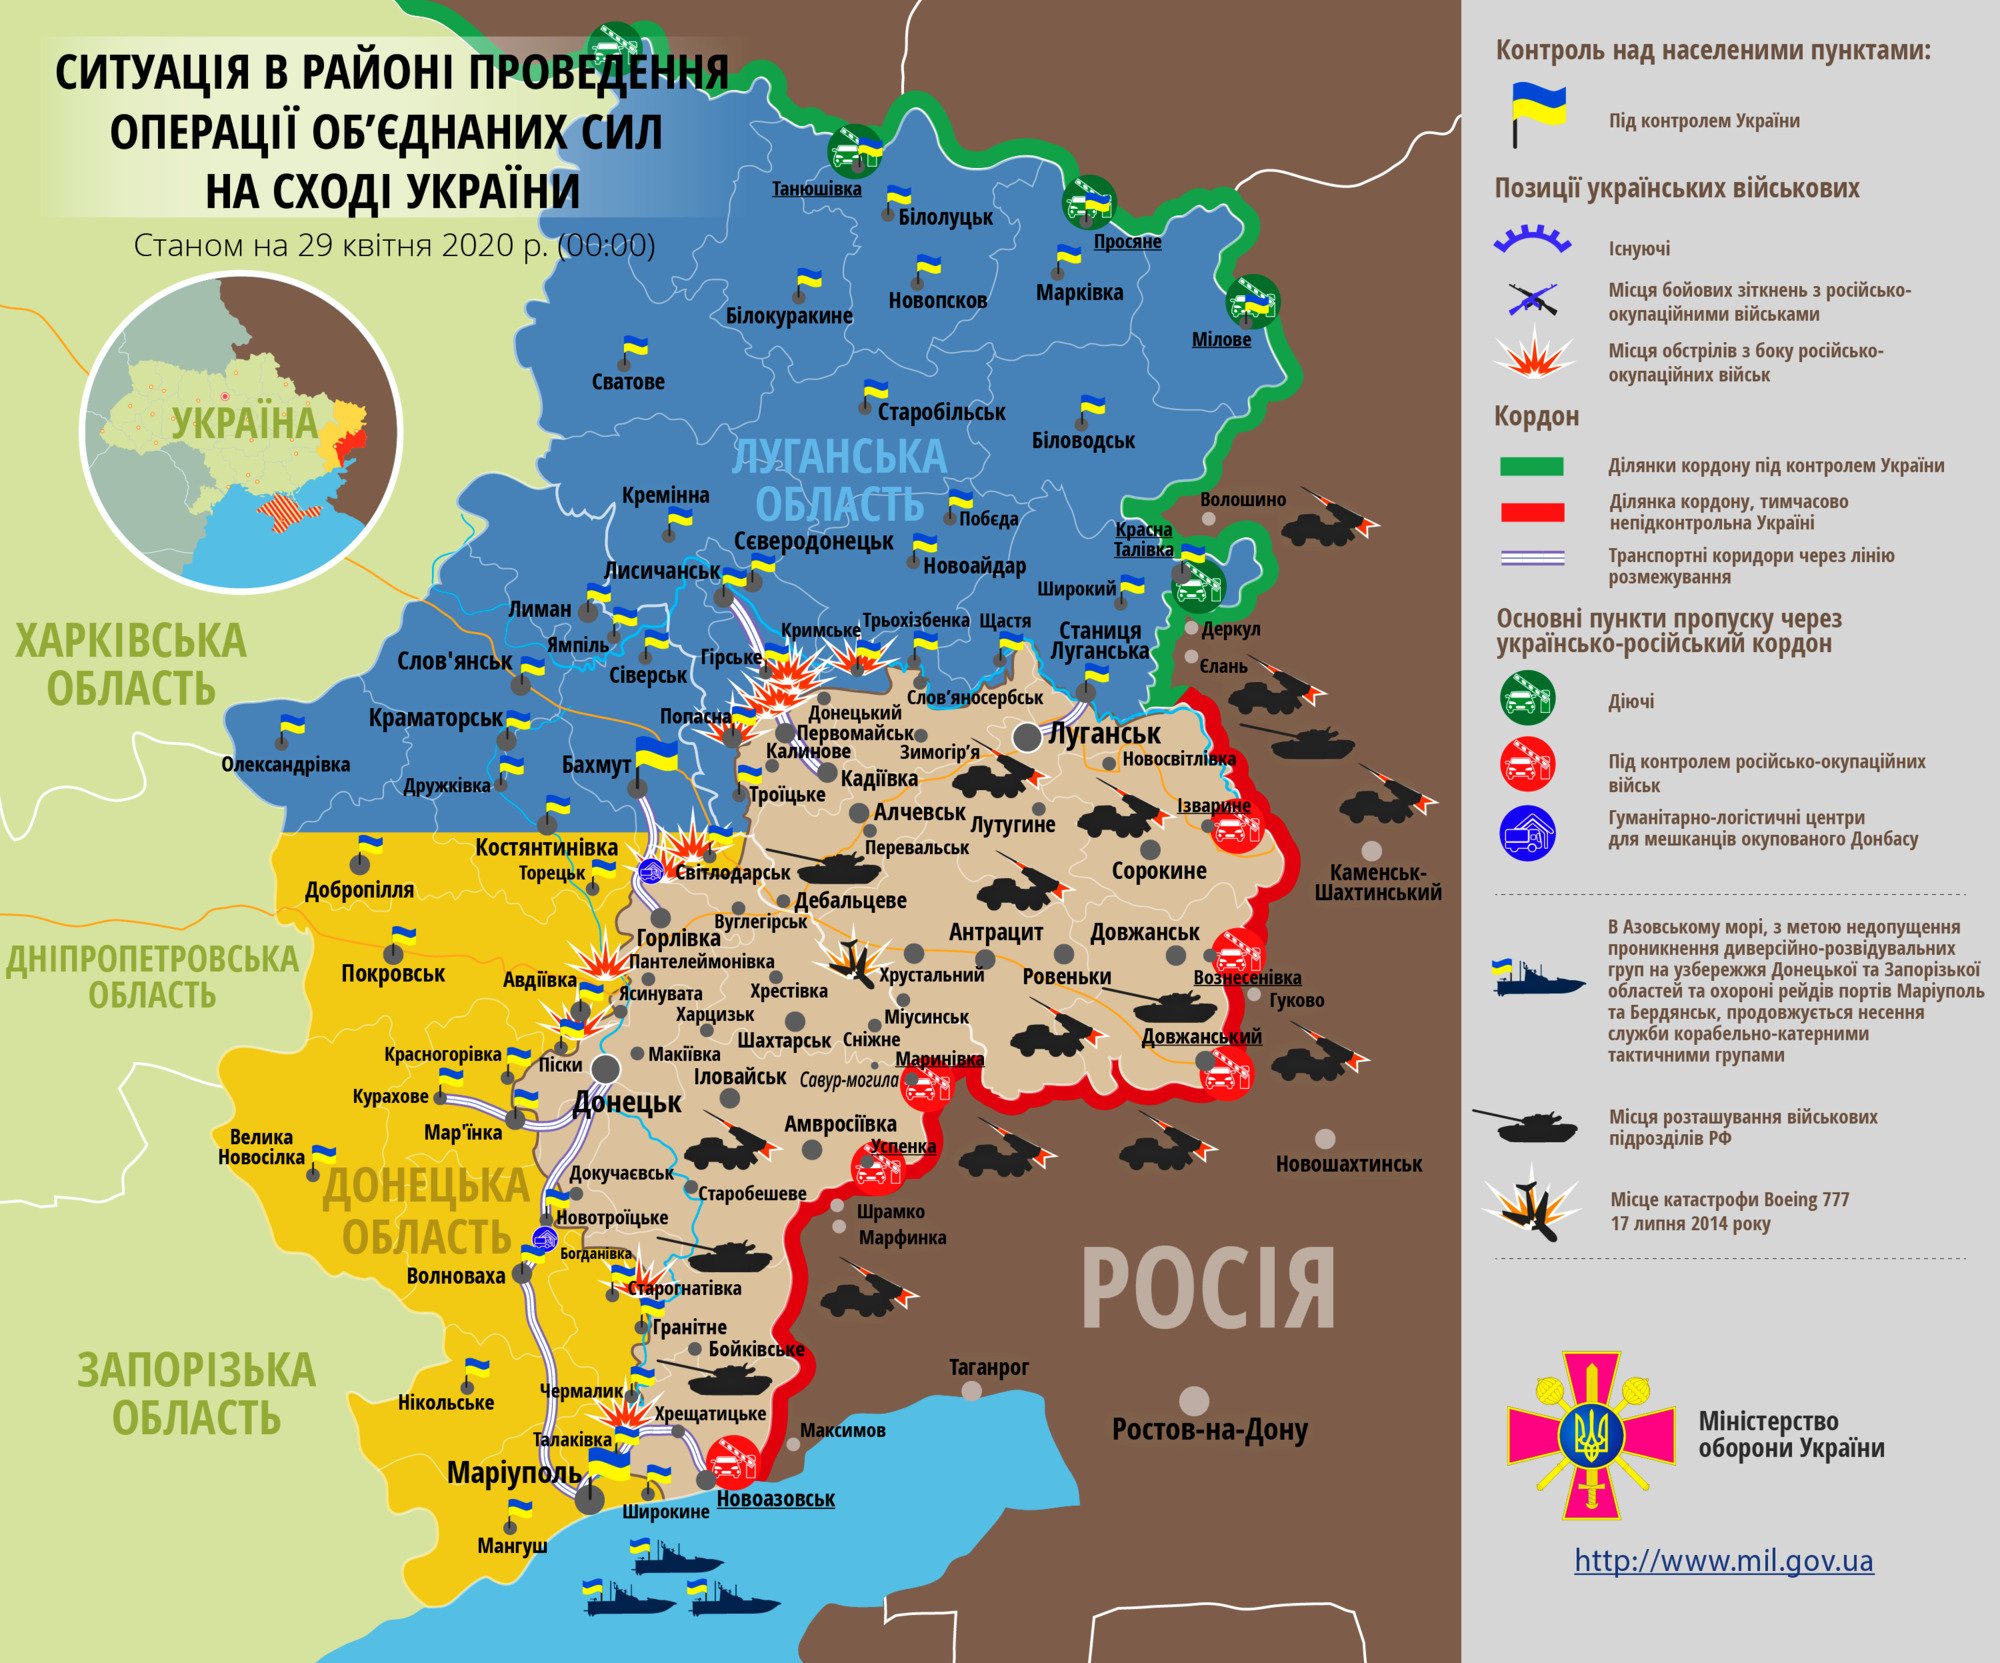 Ситуация в зоне проведения ООС на Донбассе 29 апреля